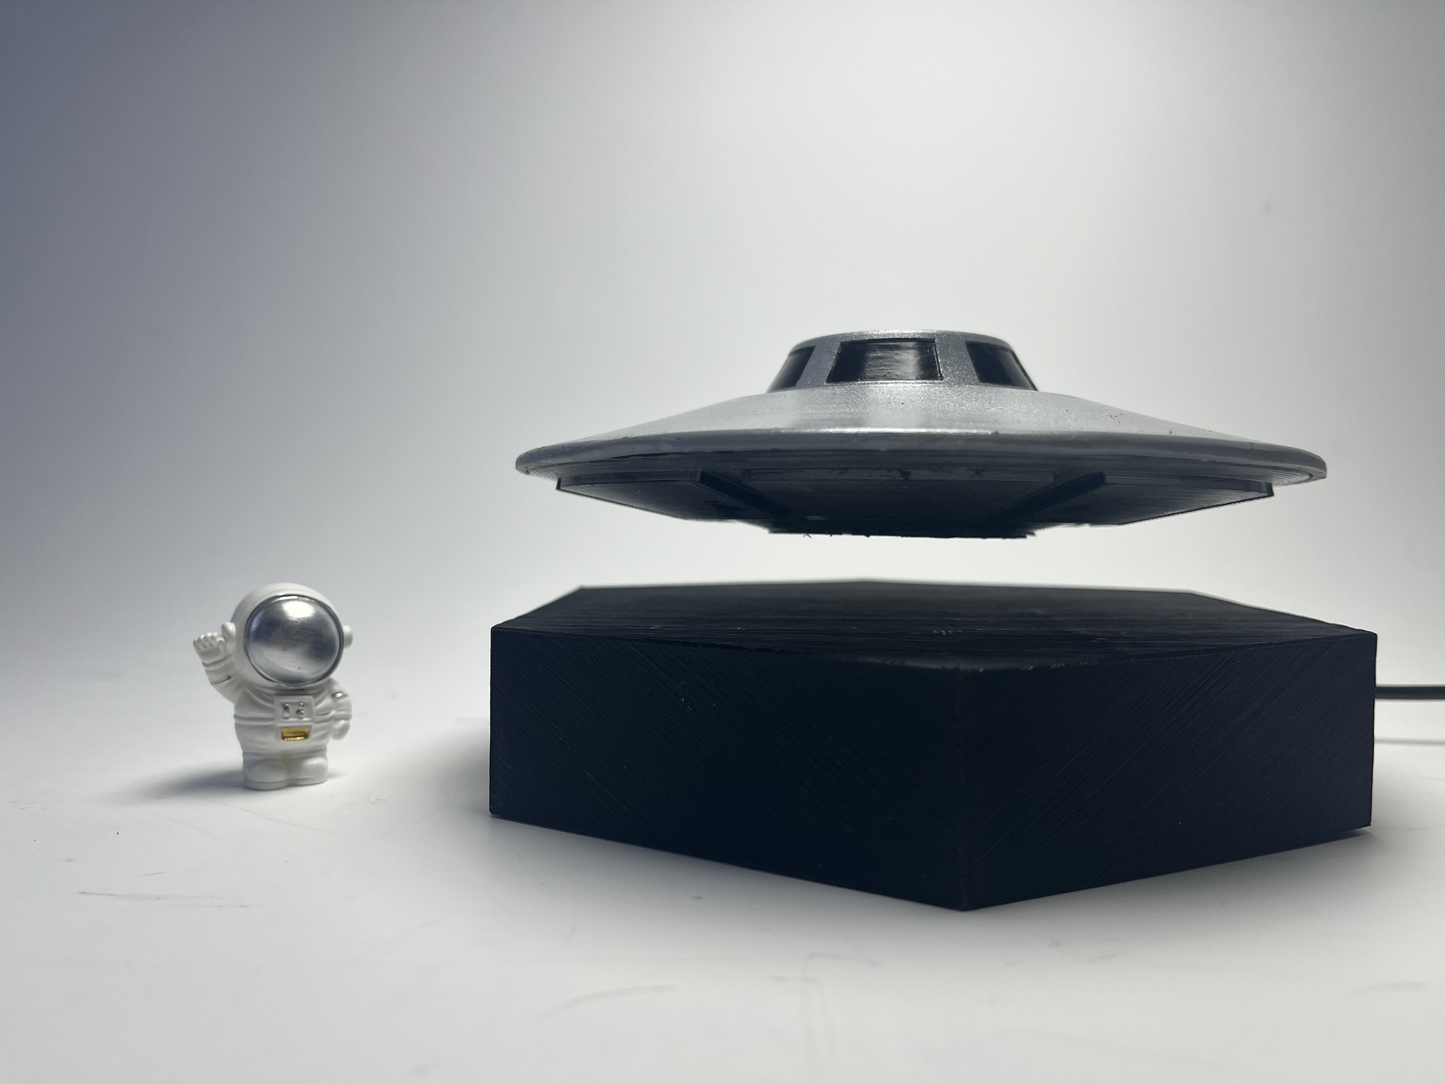 Floating Handmade UFO Model- Desk Toys -Desk Decor - Novelty Decoration-P45 JROD ET Craft Model